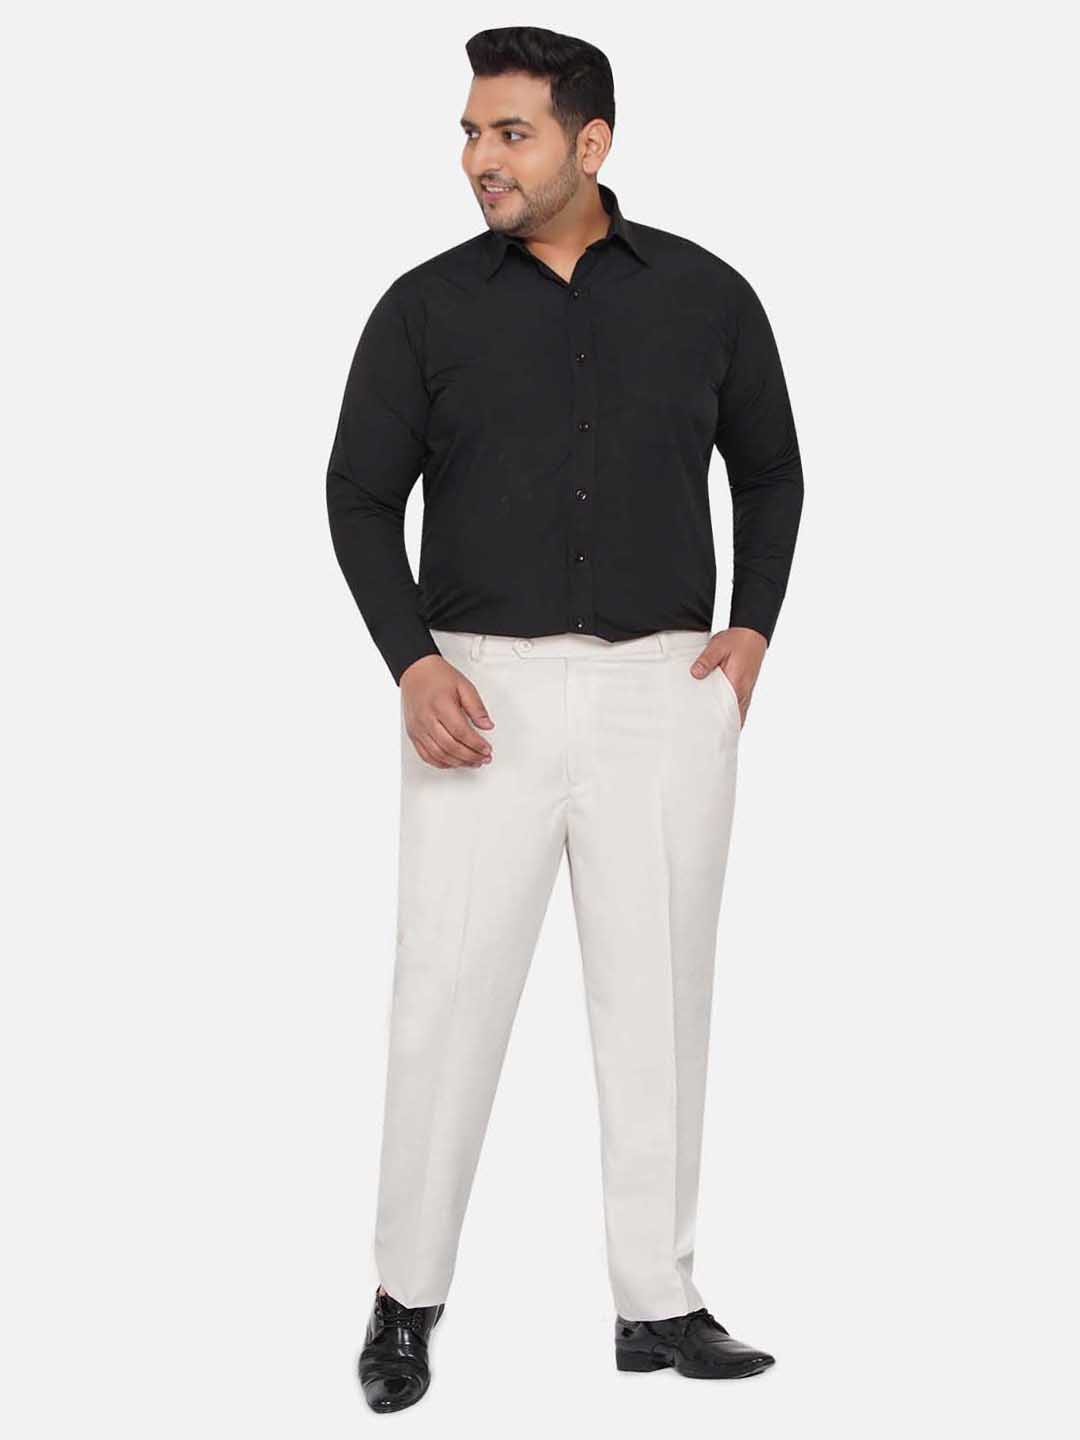 bottomwear/trousers/JPTR22010D/jptr22010d-6.jpg